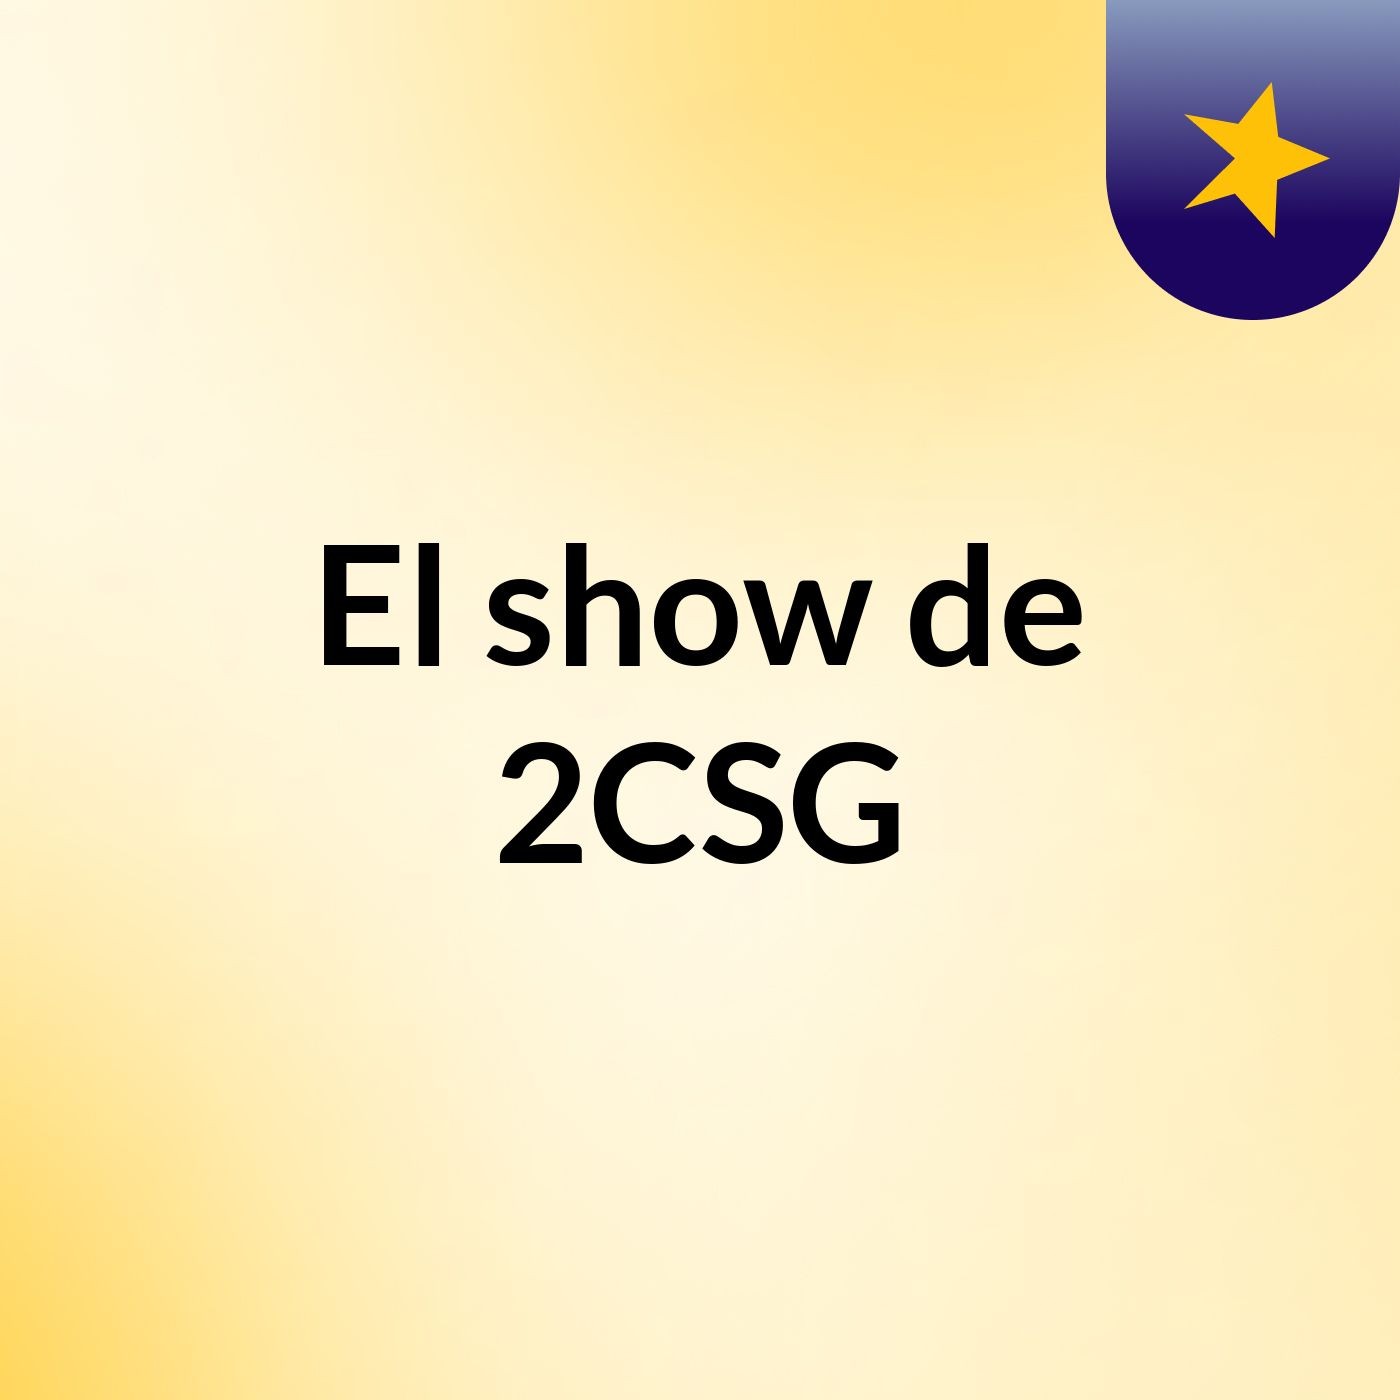 El show de 2CSG